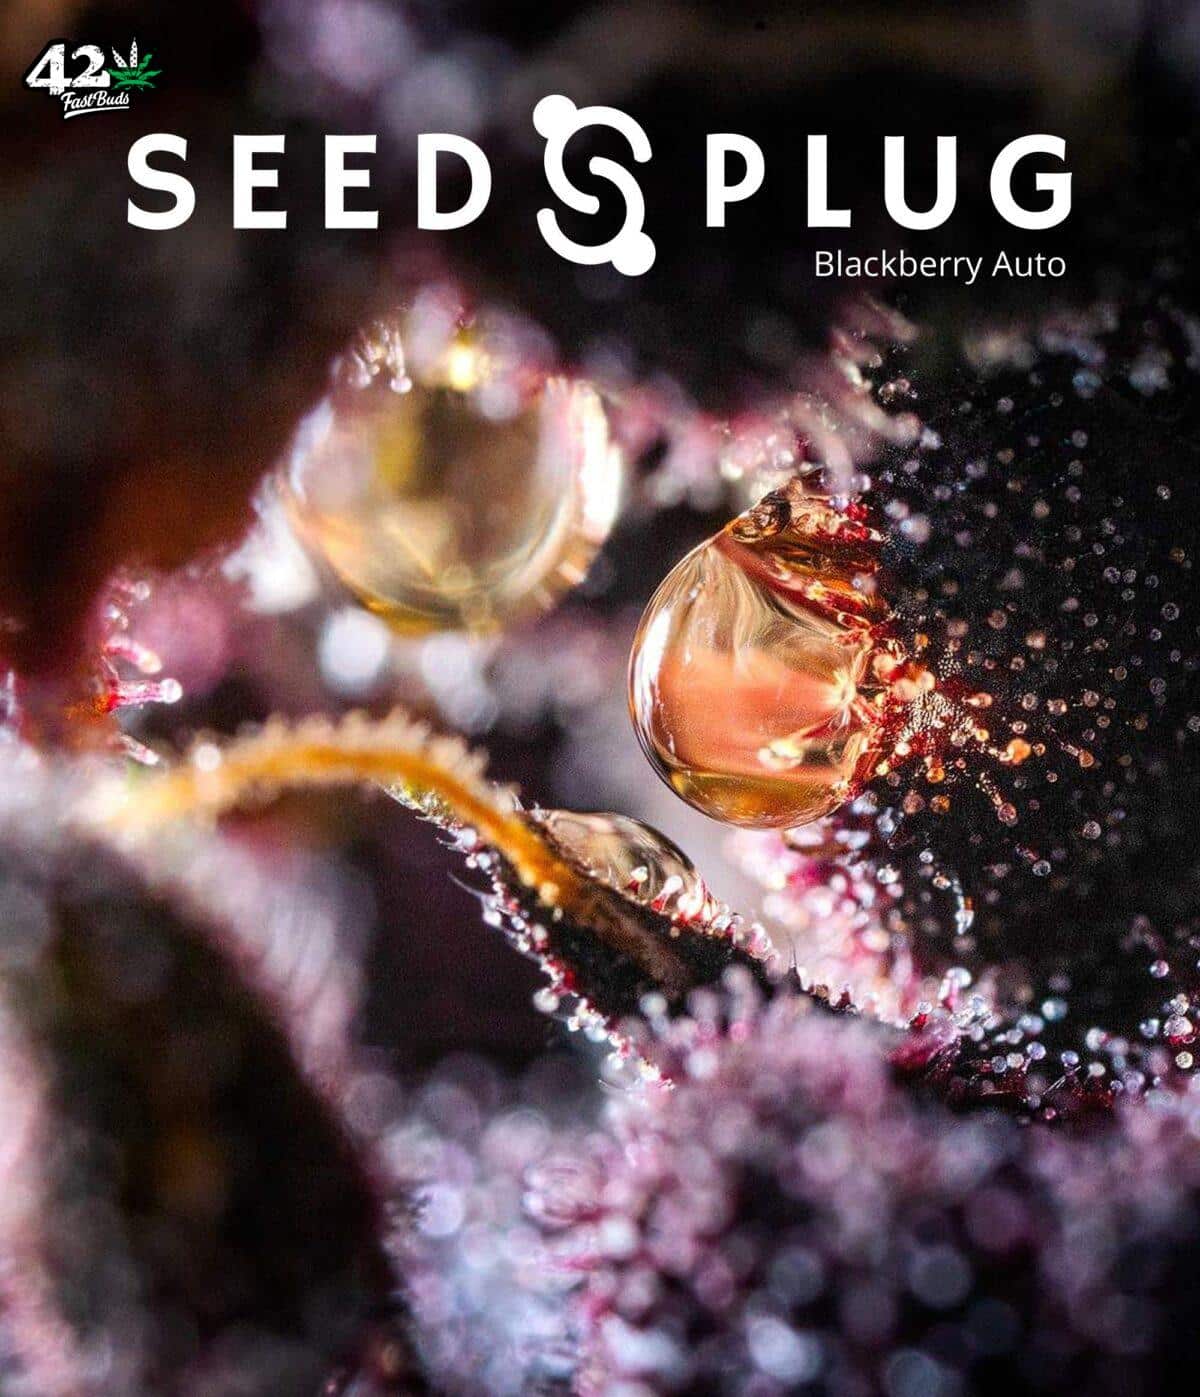 Blackberry Auto | SeedsPlug